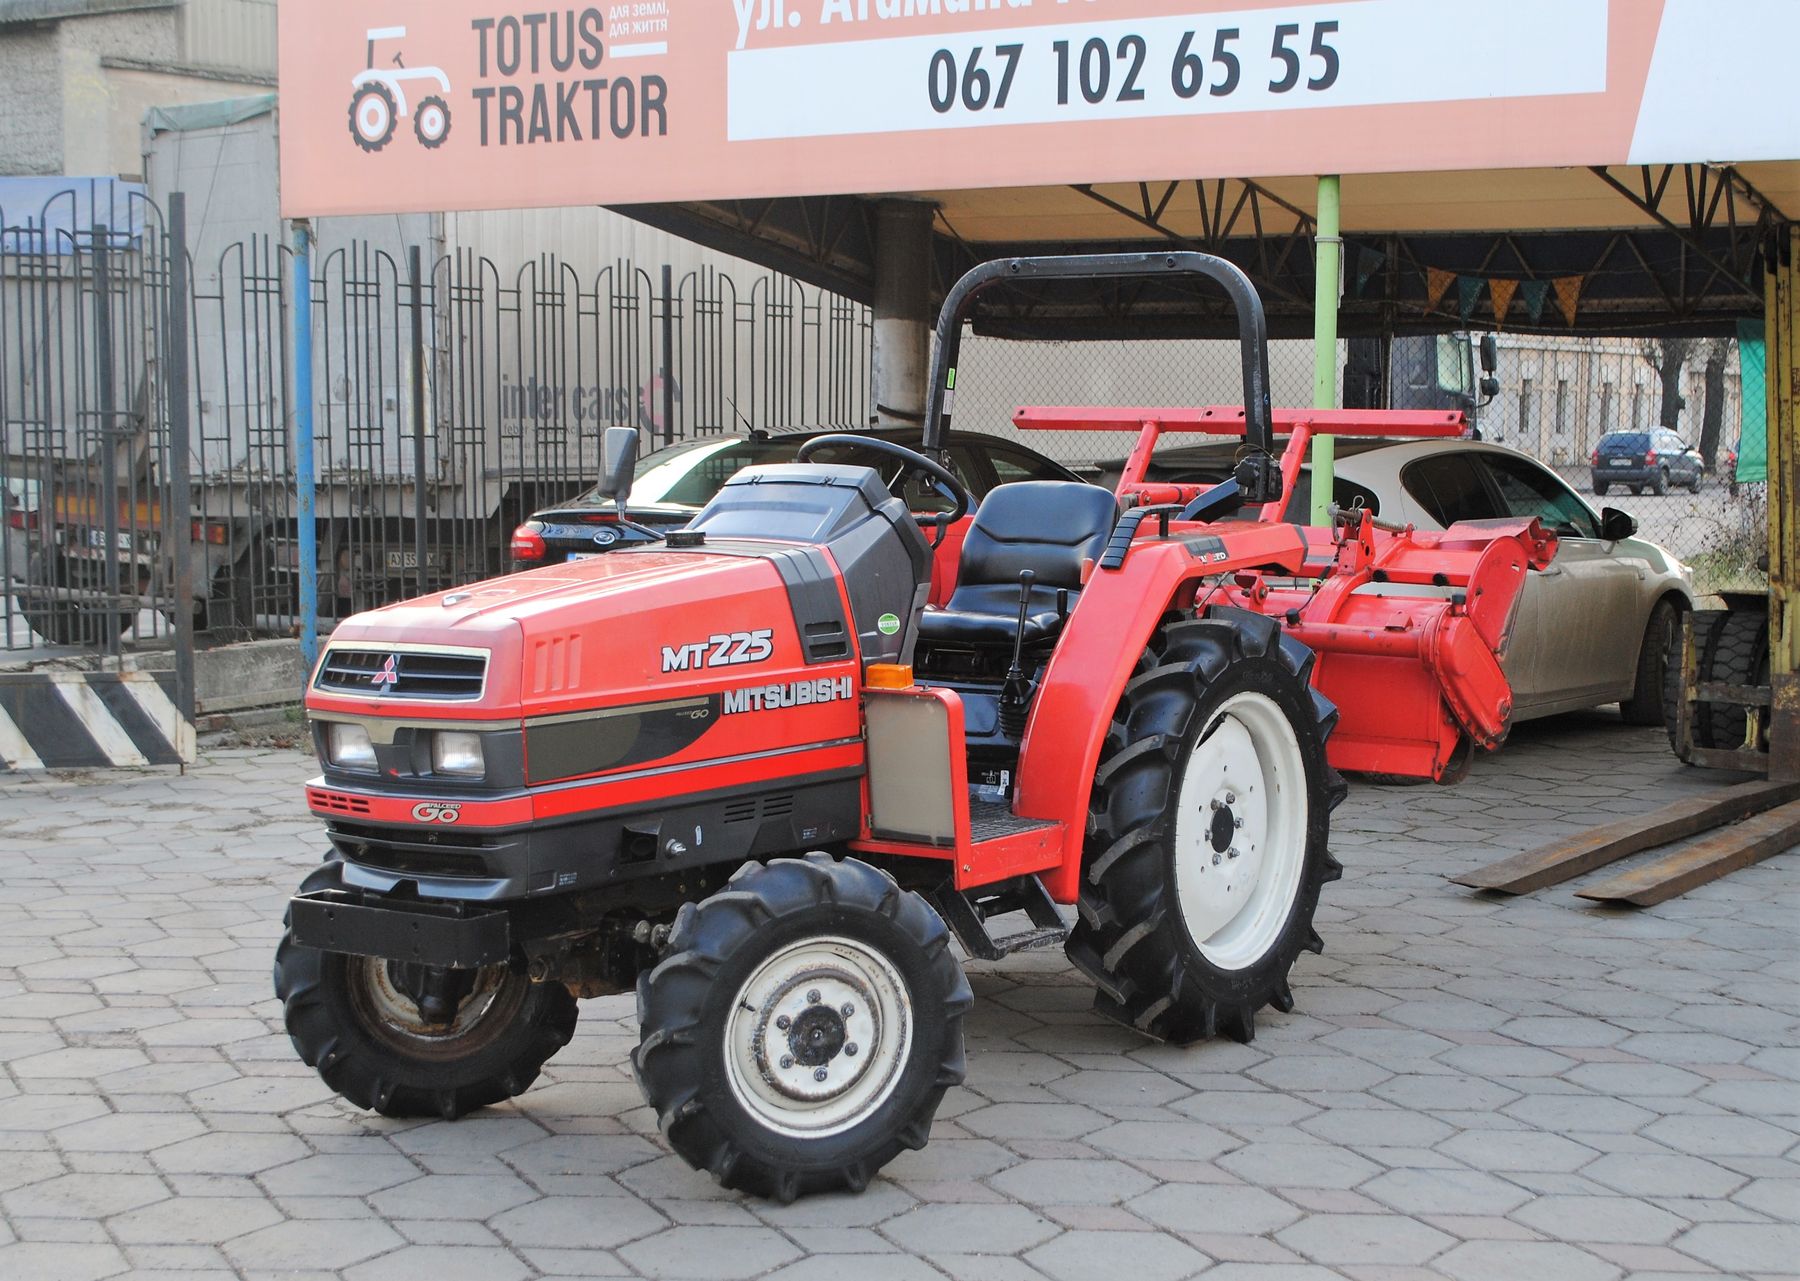 Митсубиси трактор купить педали минитрактора